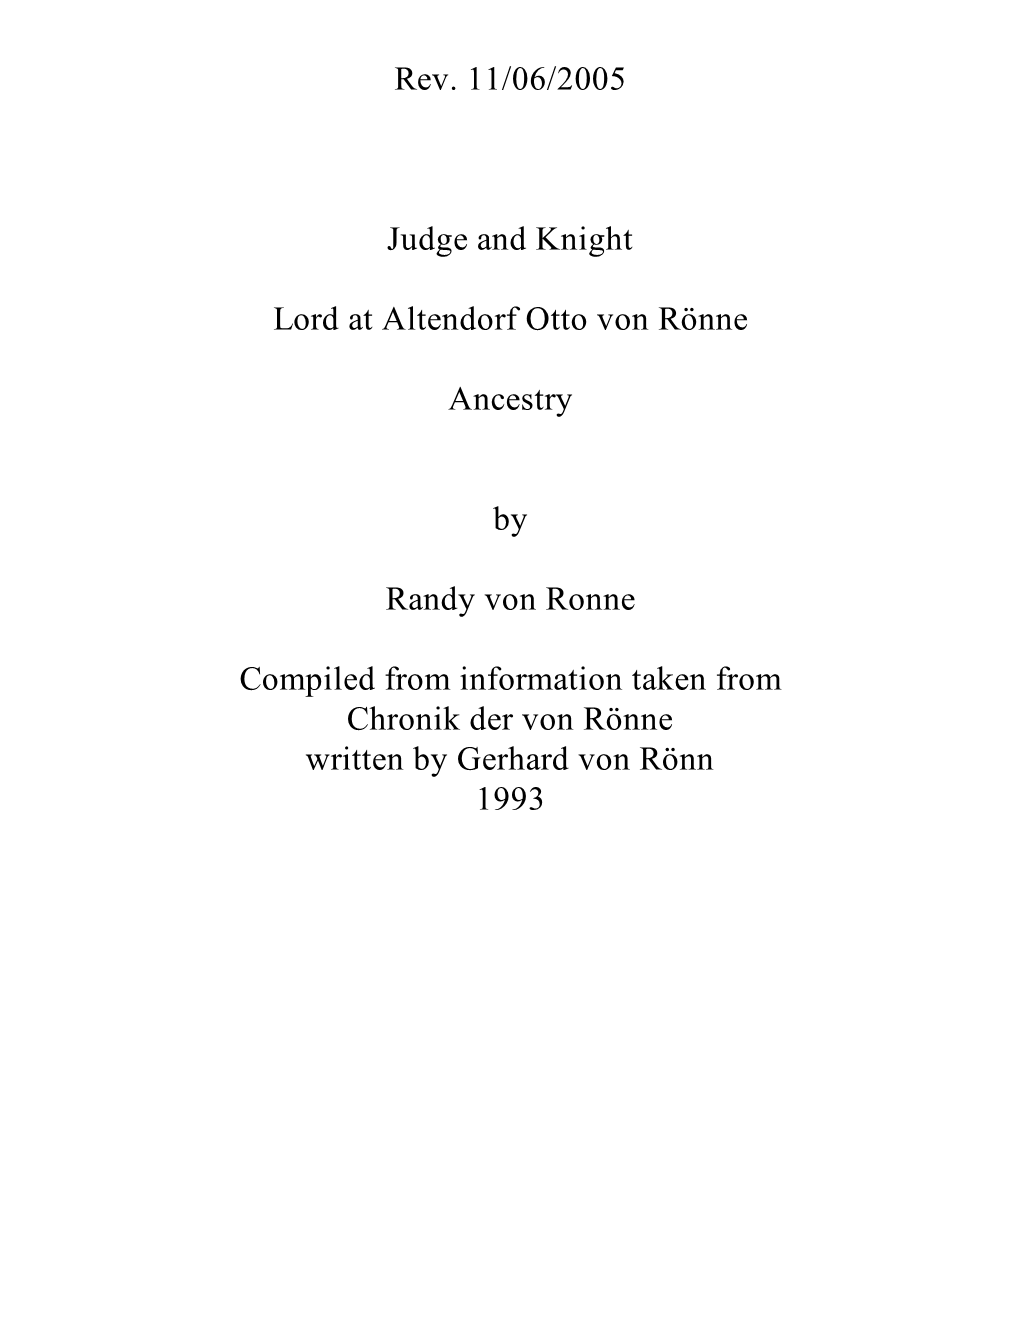 Rev. 11/06/2005 Judge and Knight Lord at Altendorf Otto Von Rönne Ancestry by Randy Von Ronne Compiled from Information Taken F